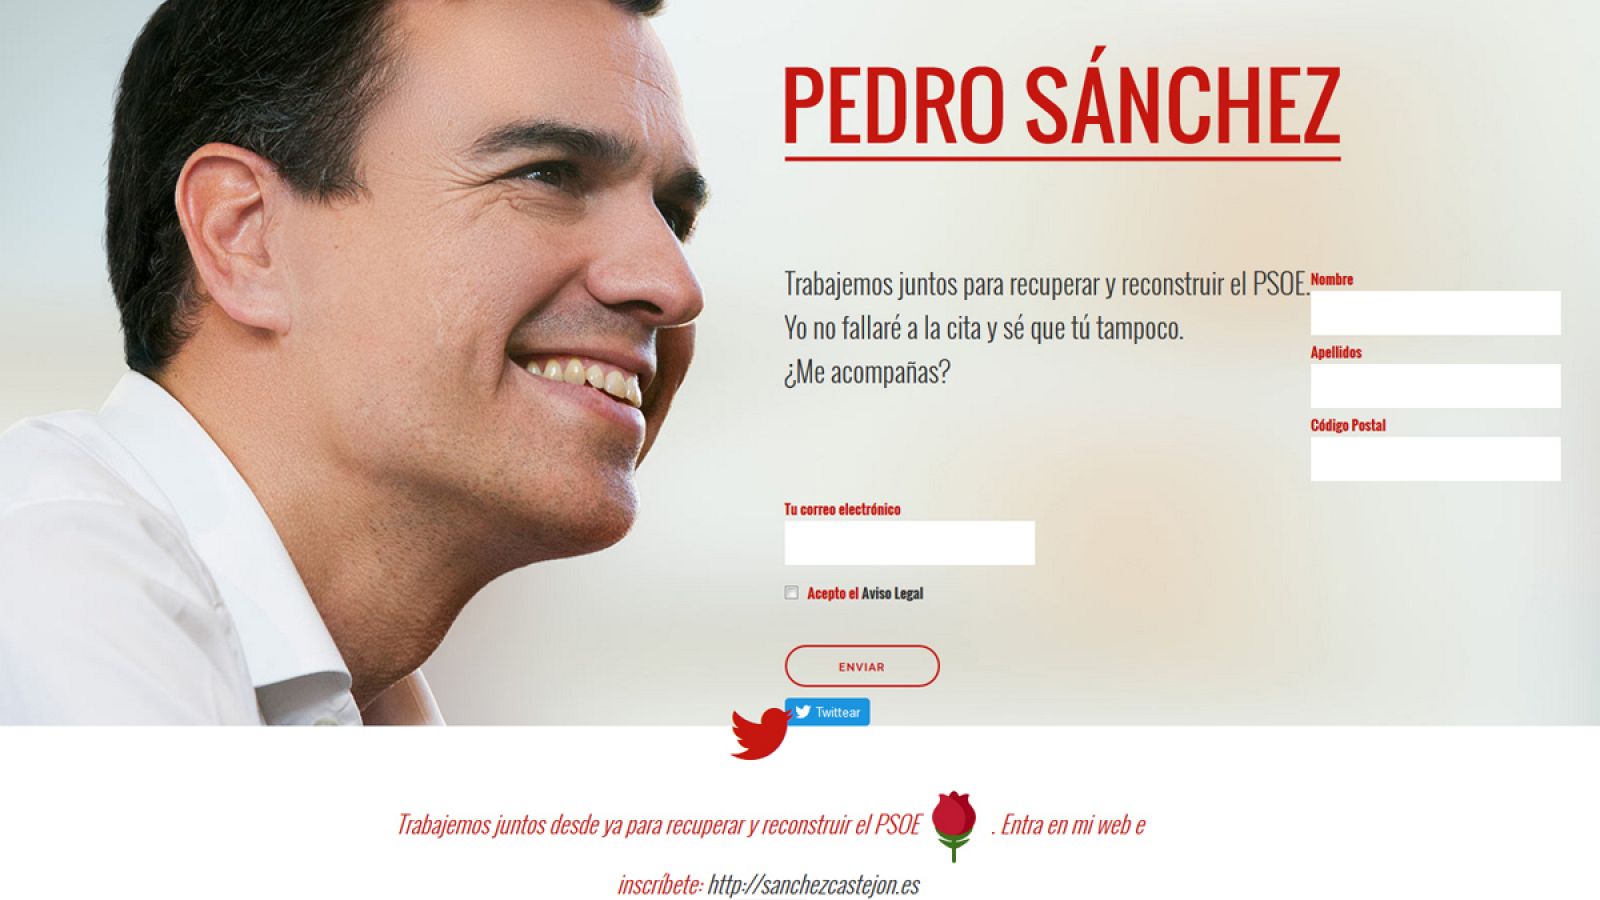 Página web "sanchezcastejon.es"